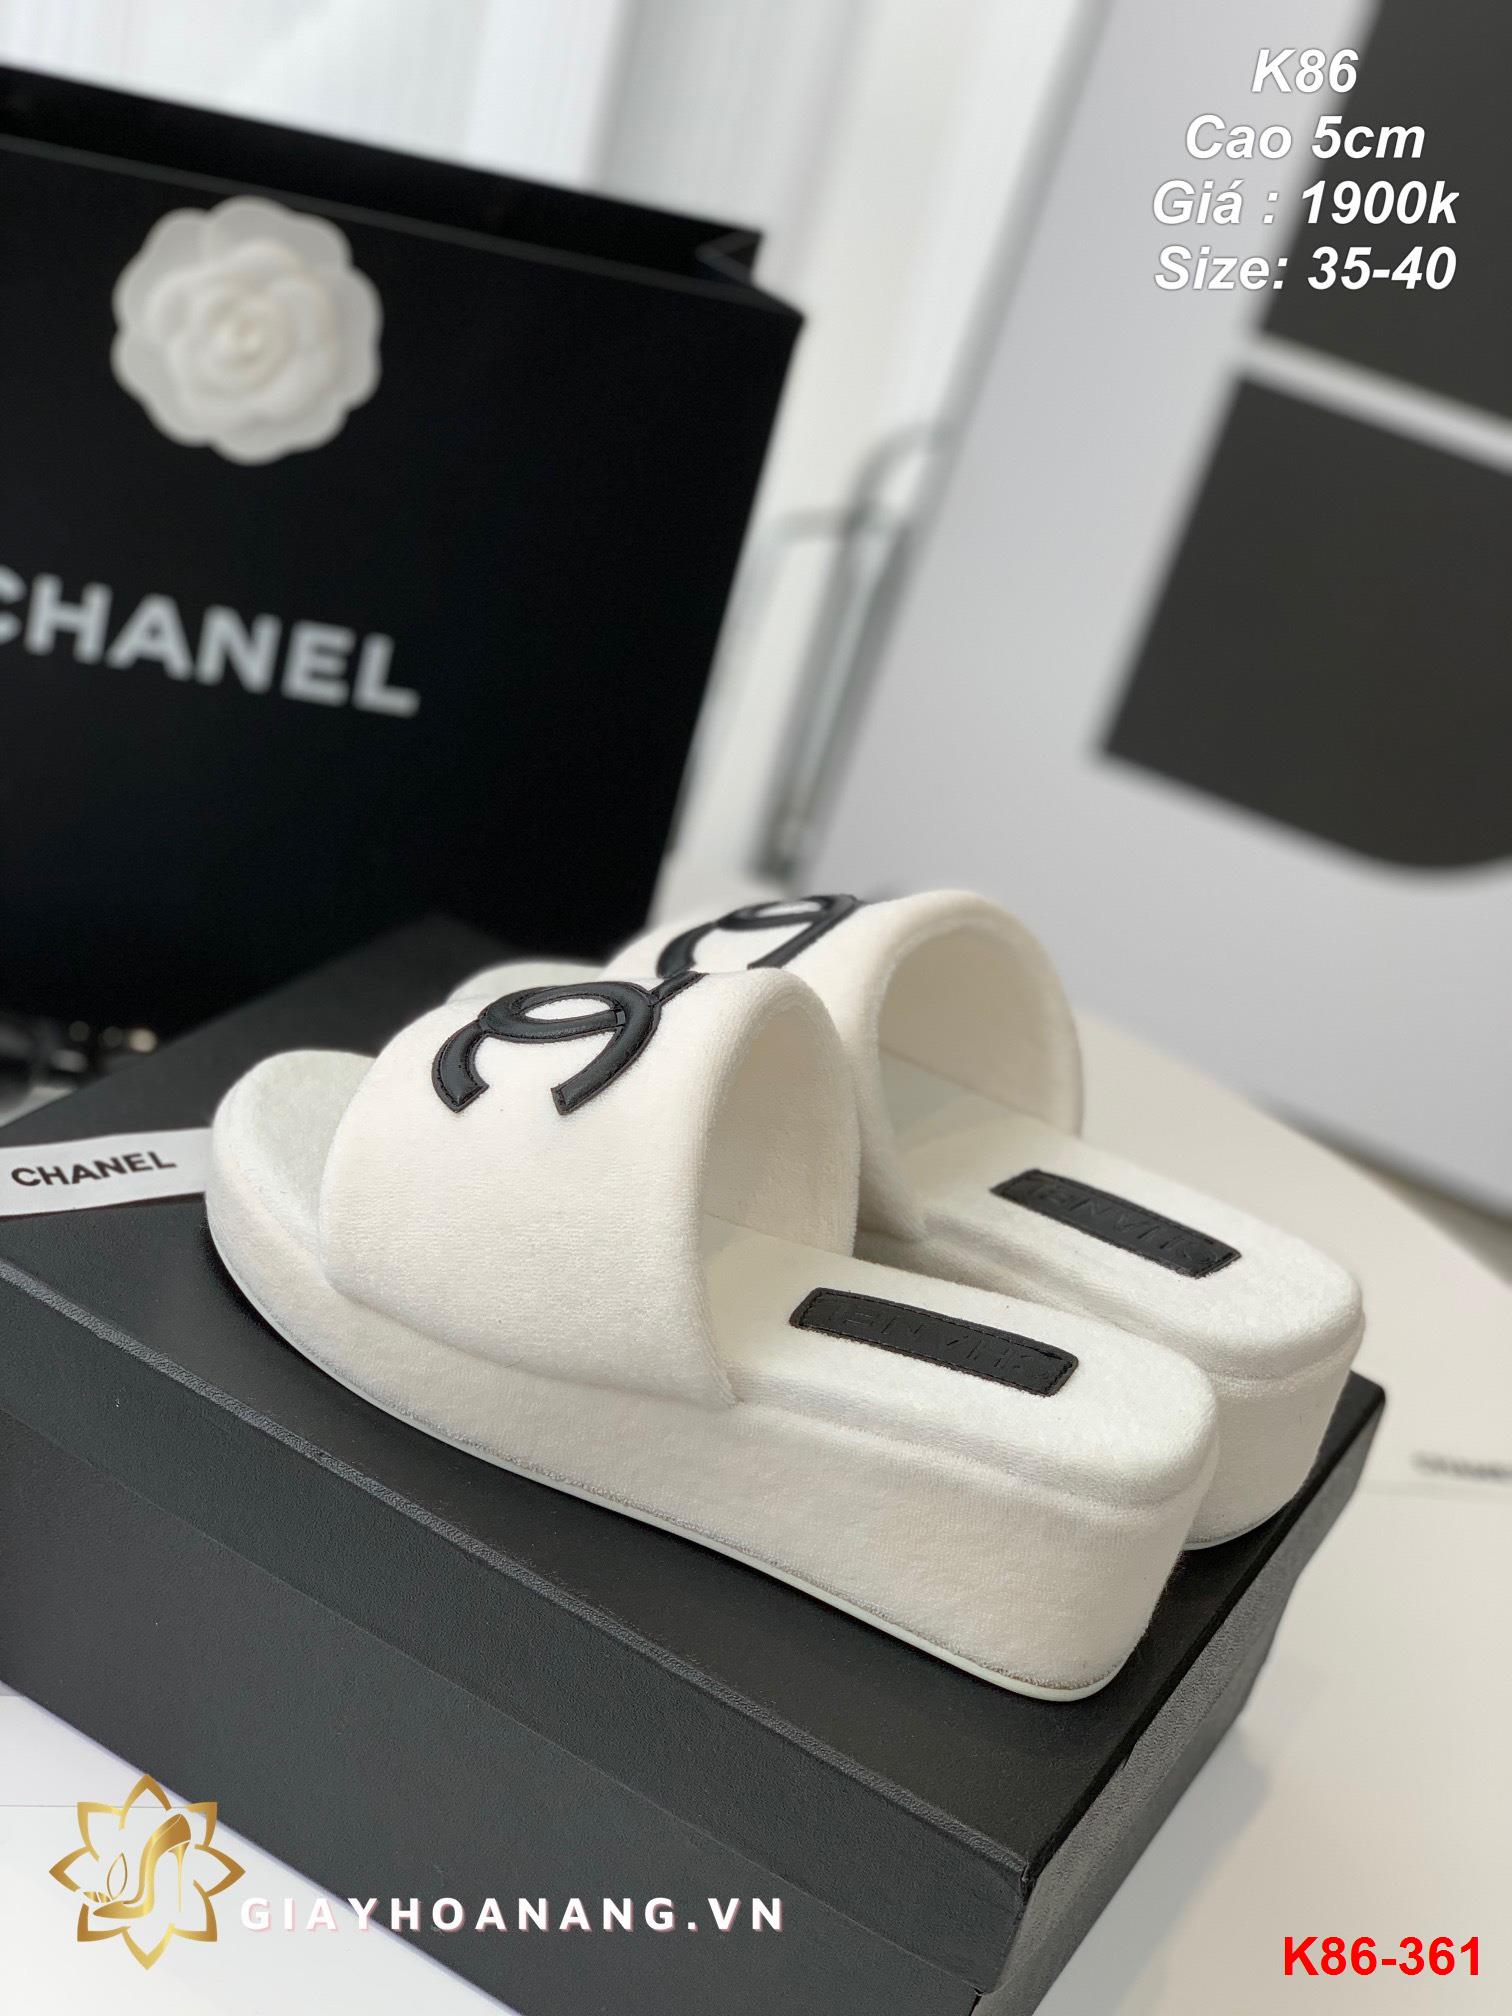 K86-361 Chanel dép cao 5cm siêu cấp